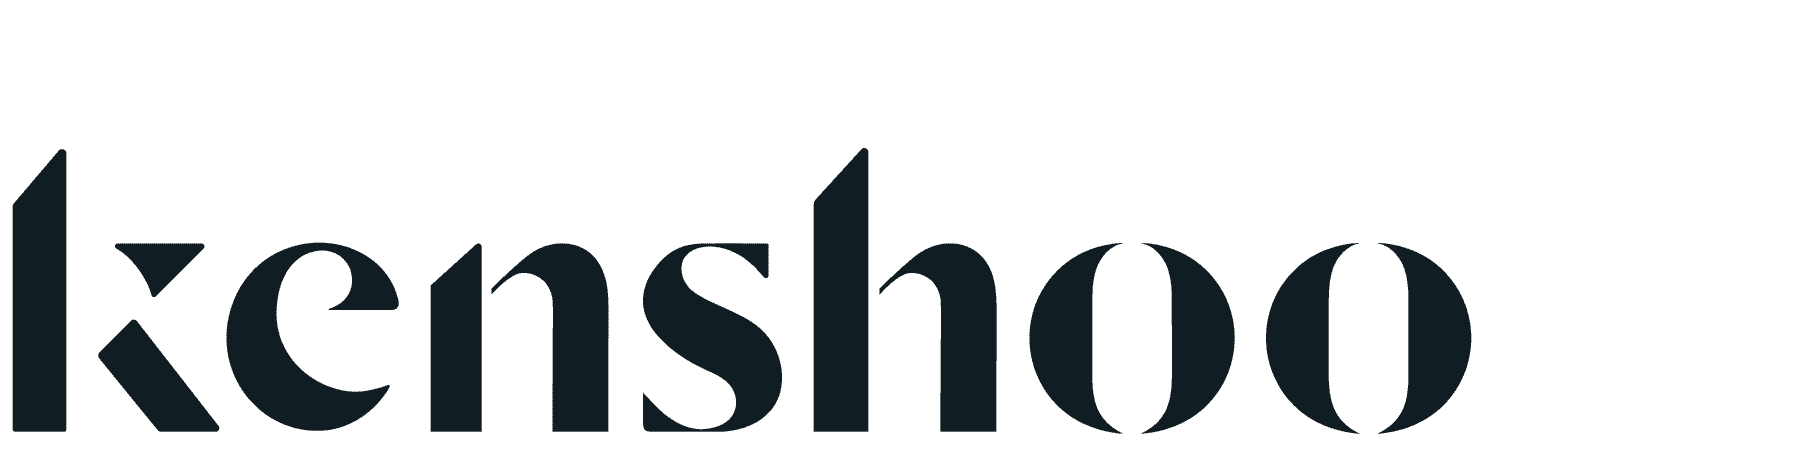 kenshoo logo